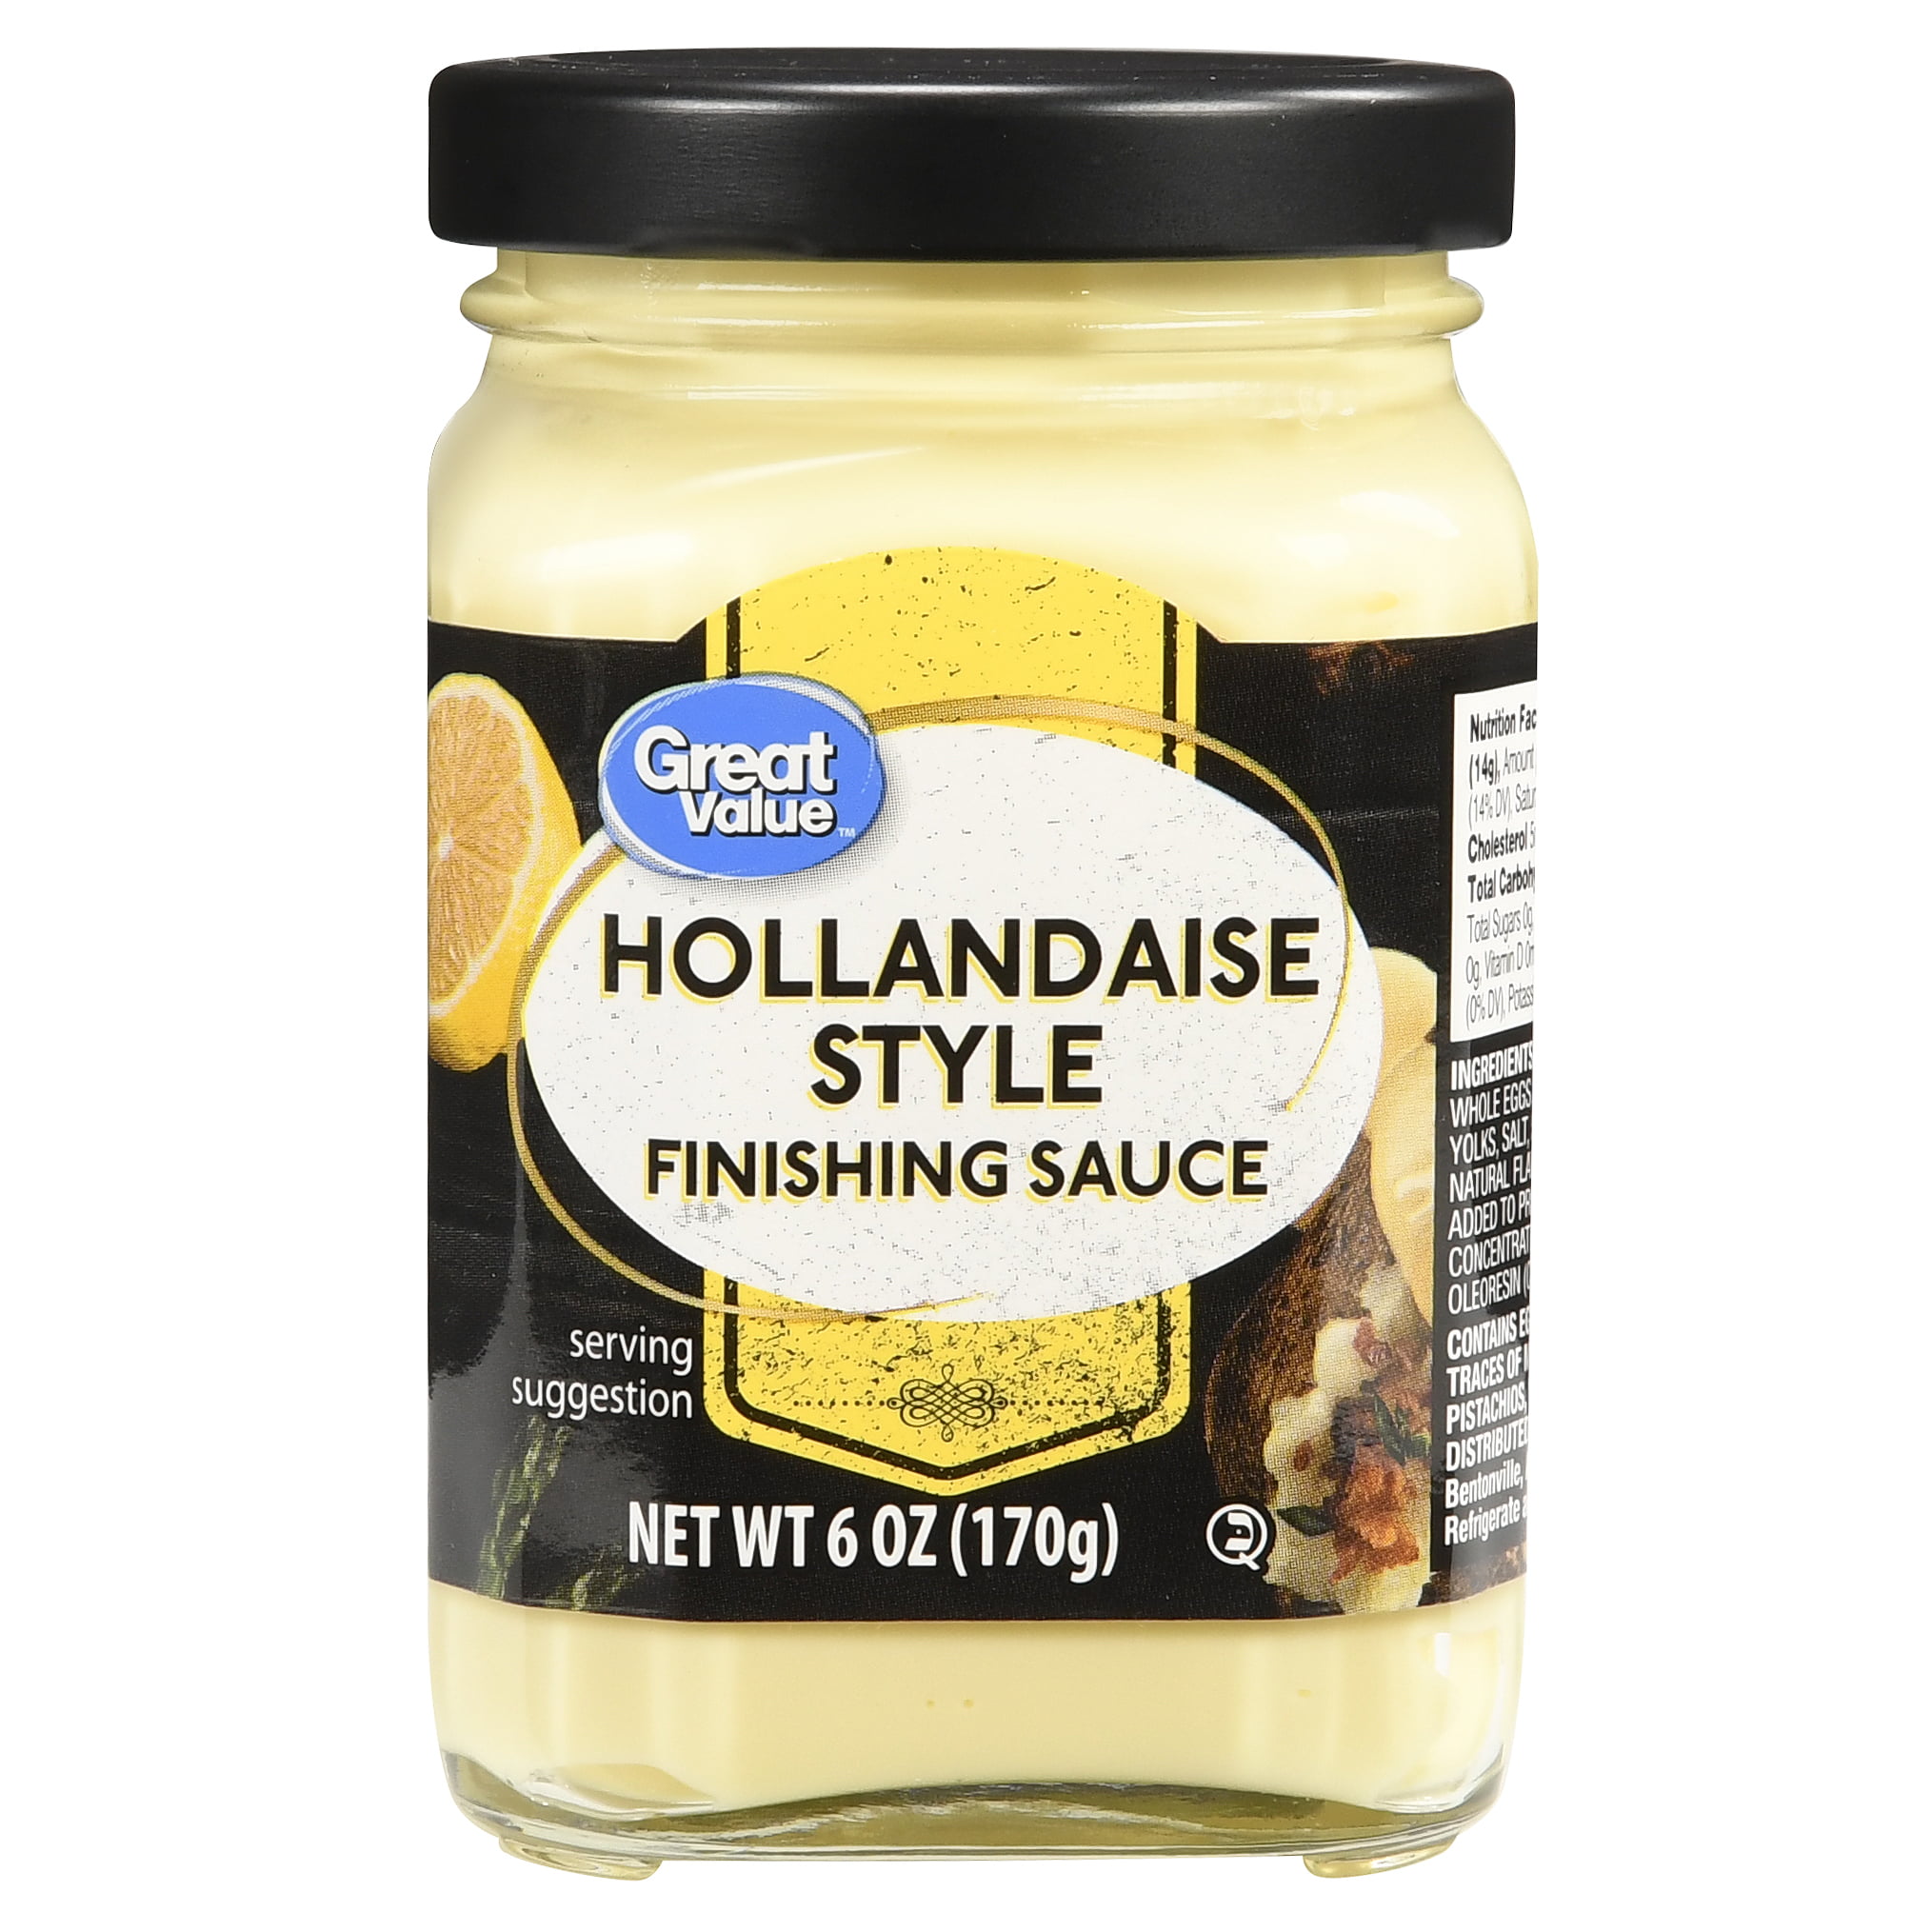 Great Value Hollandaise Finishing Sauce, 6 oz